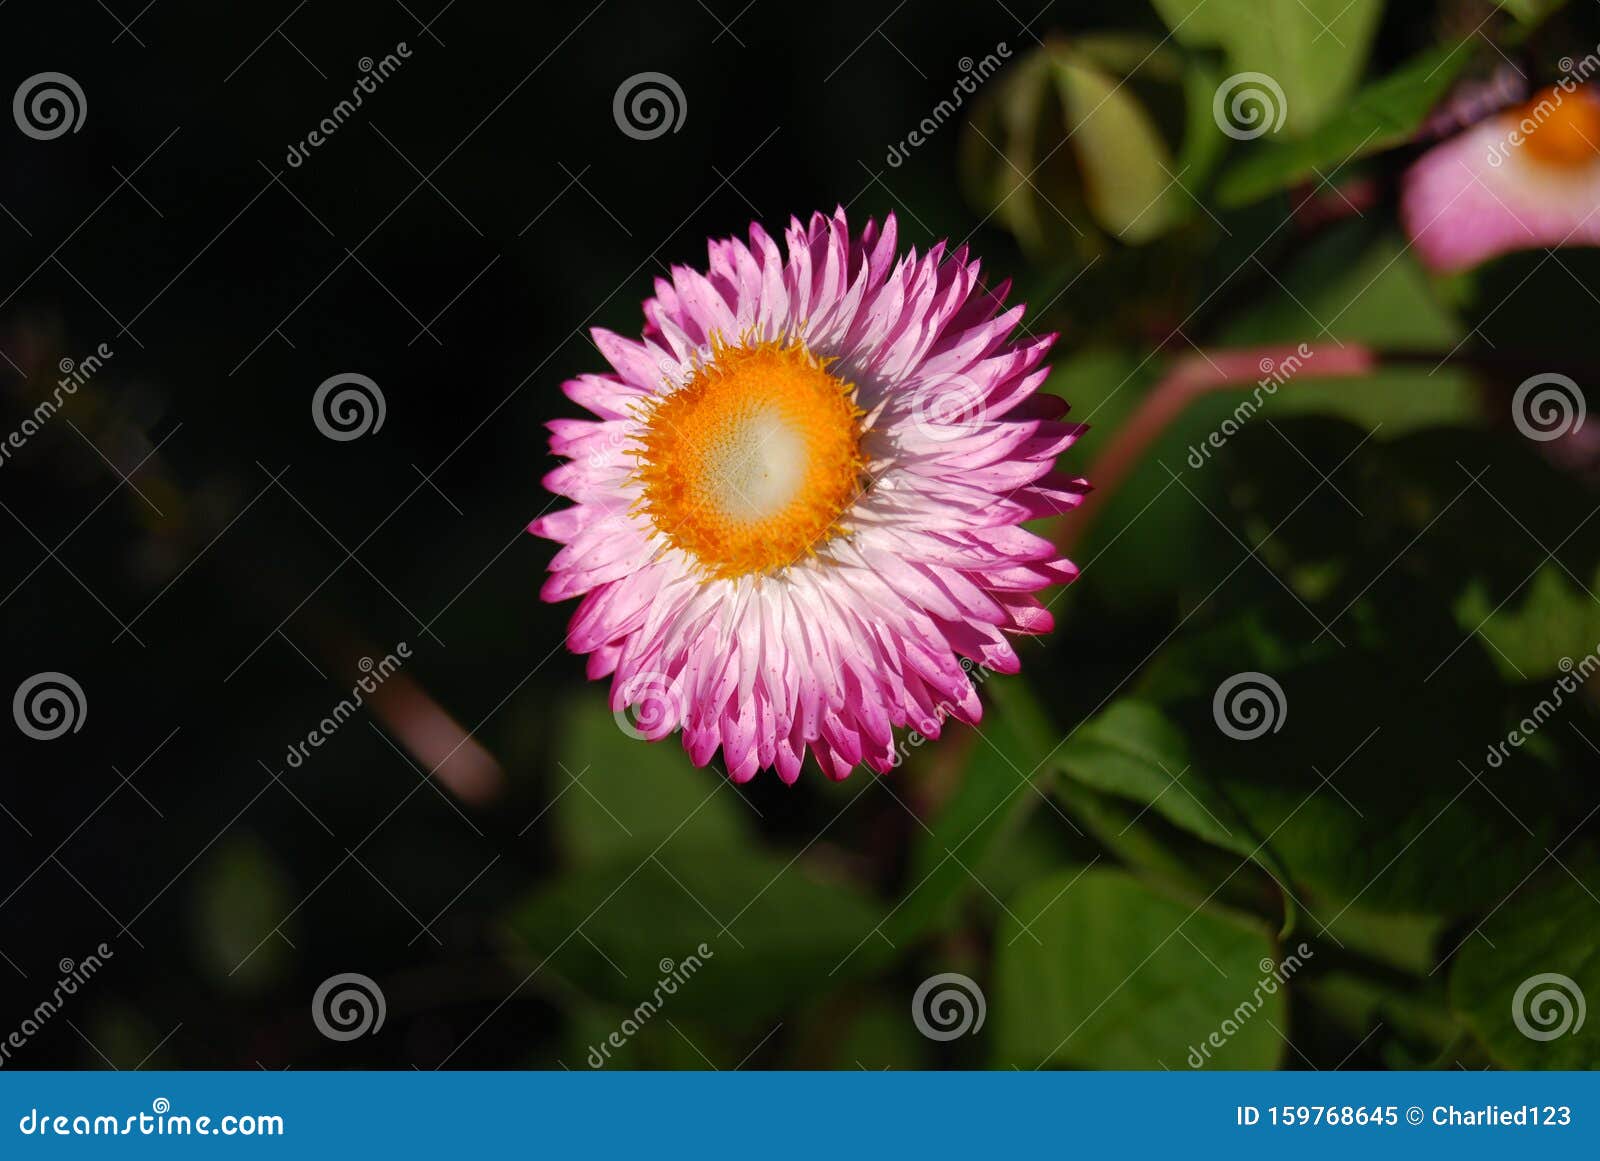  pink straw flower agains a blurred garden background